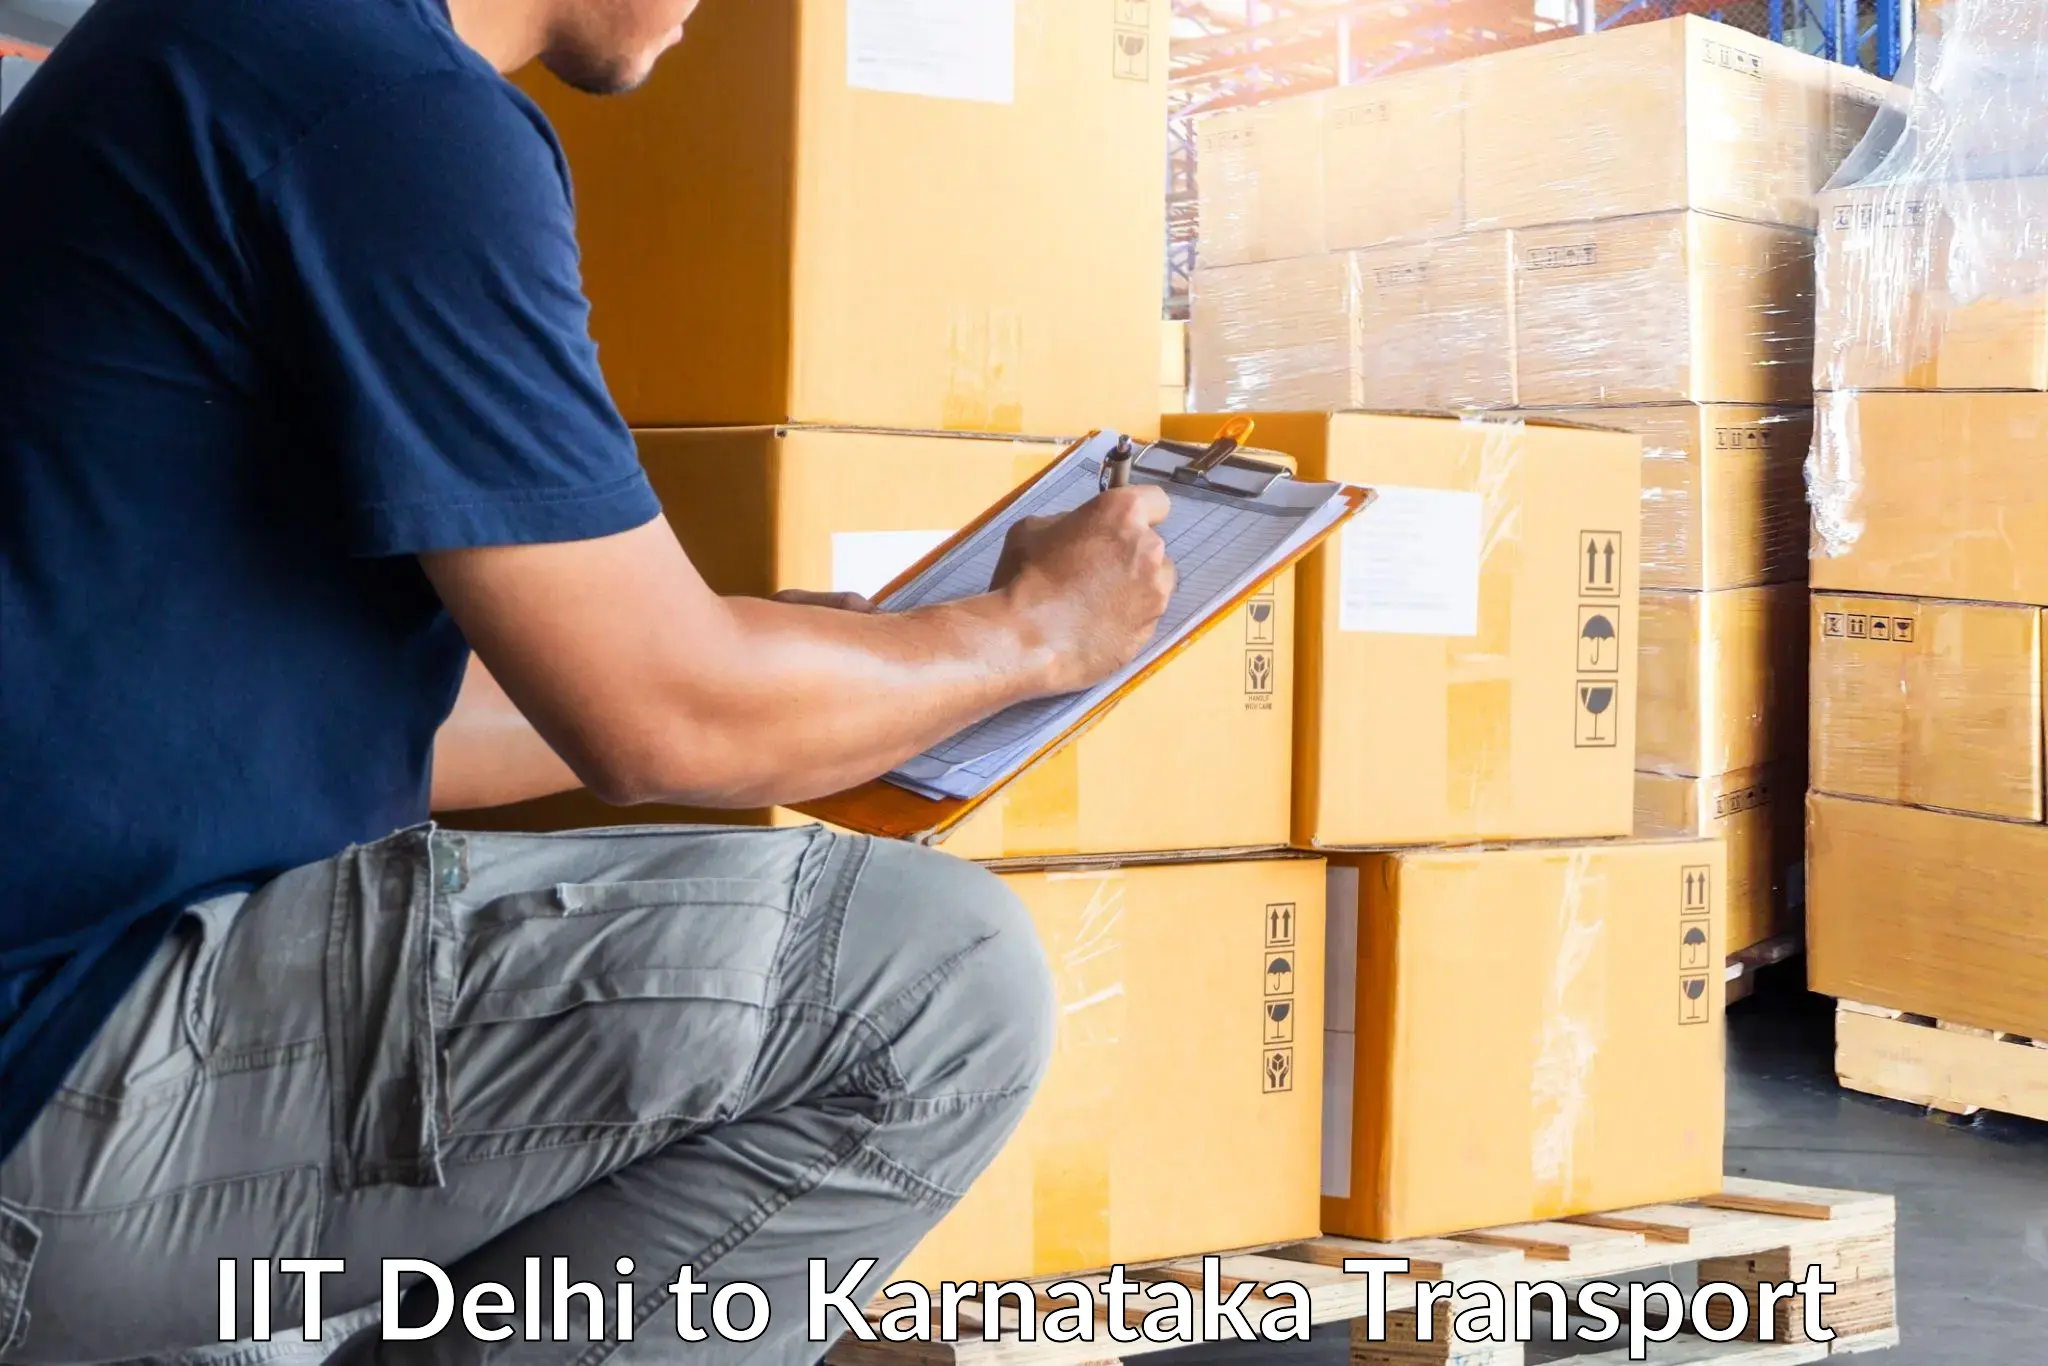 Goods delivery service IIT Delhi to Virajpet